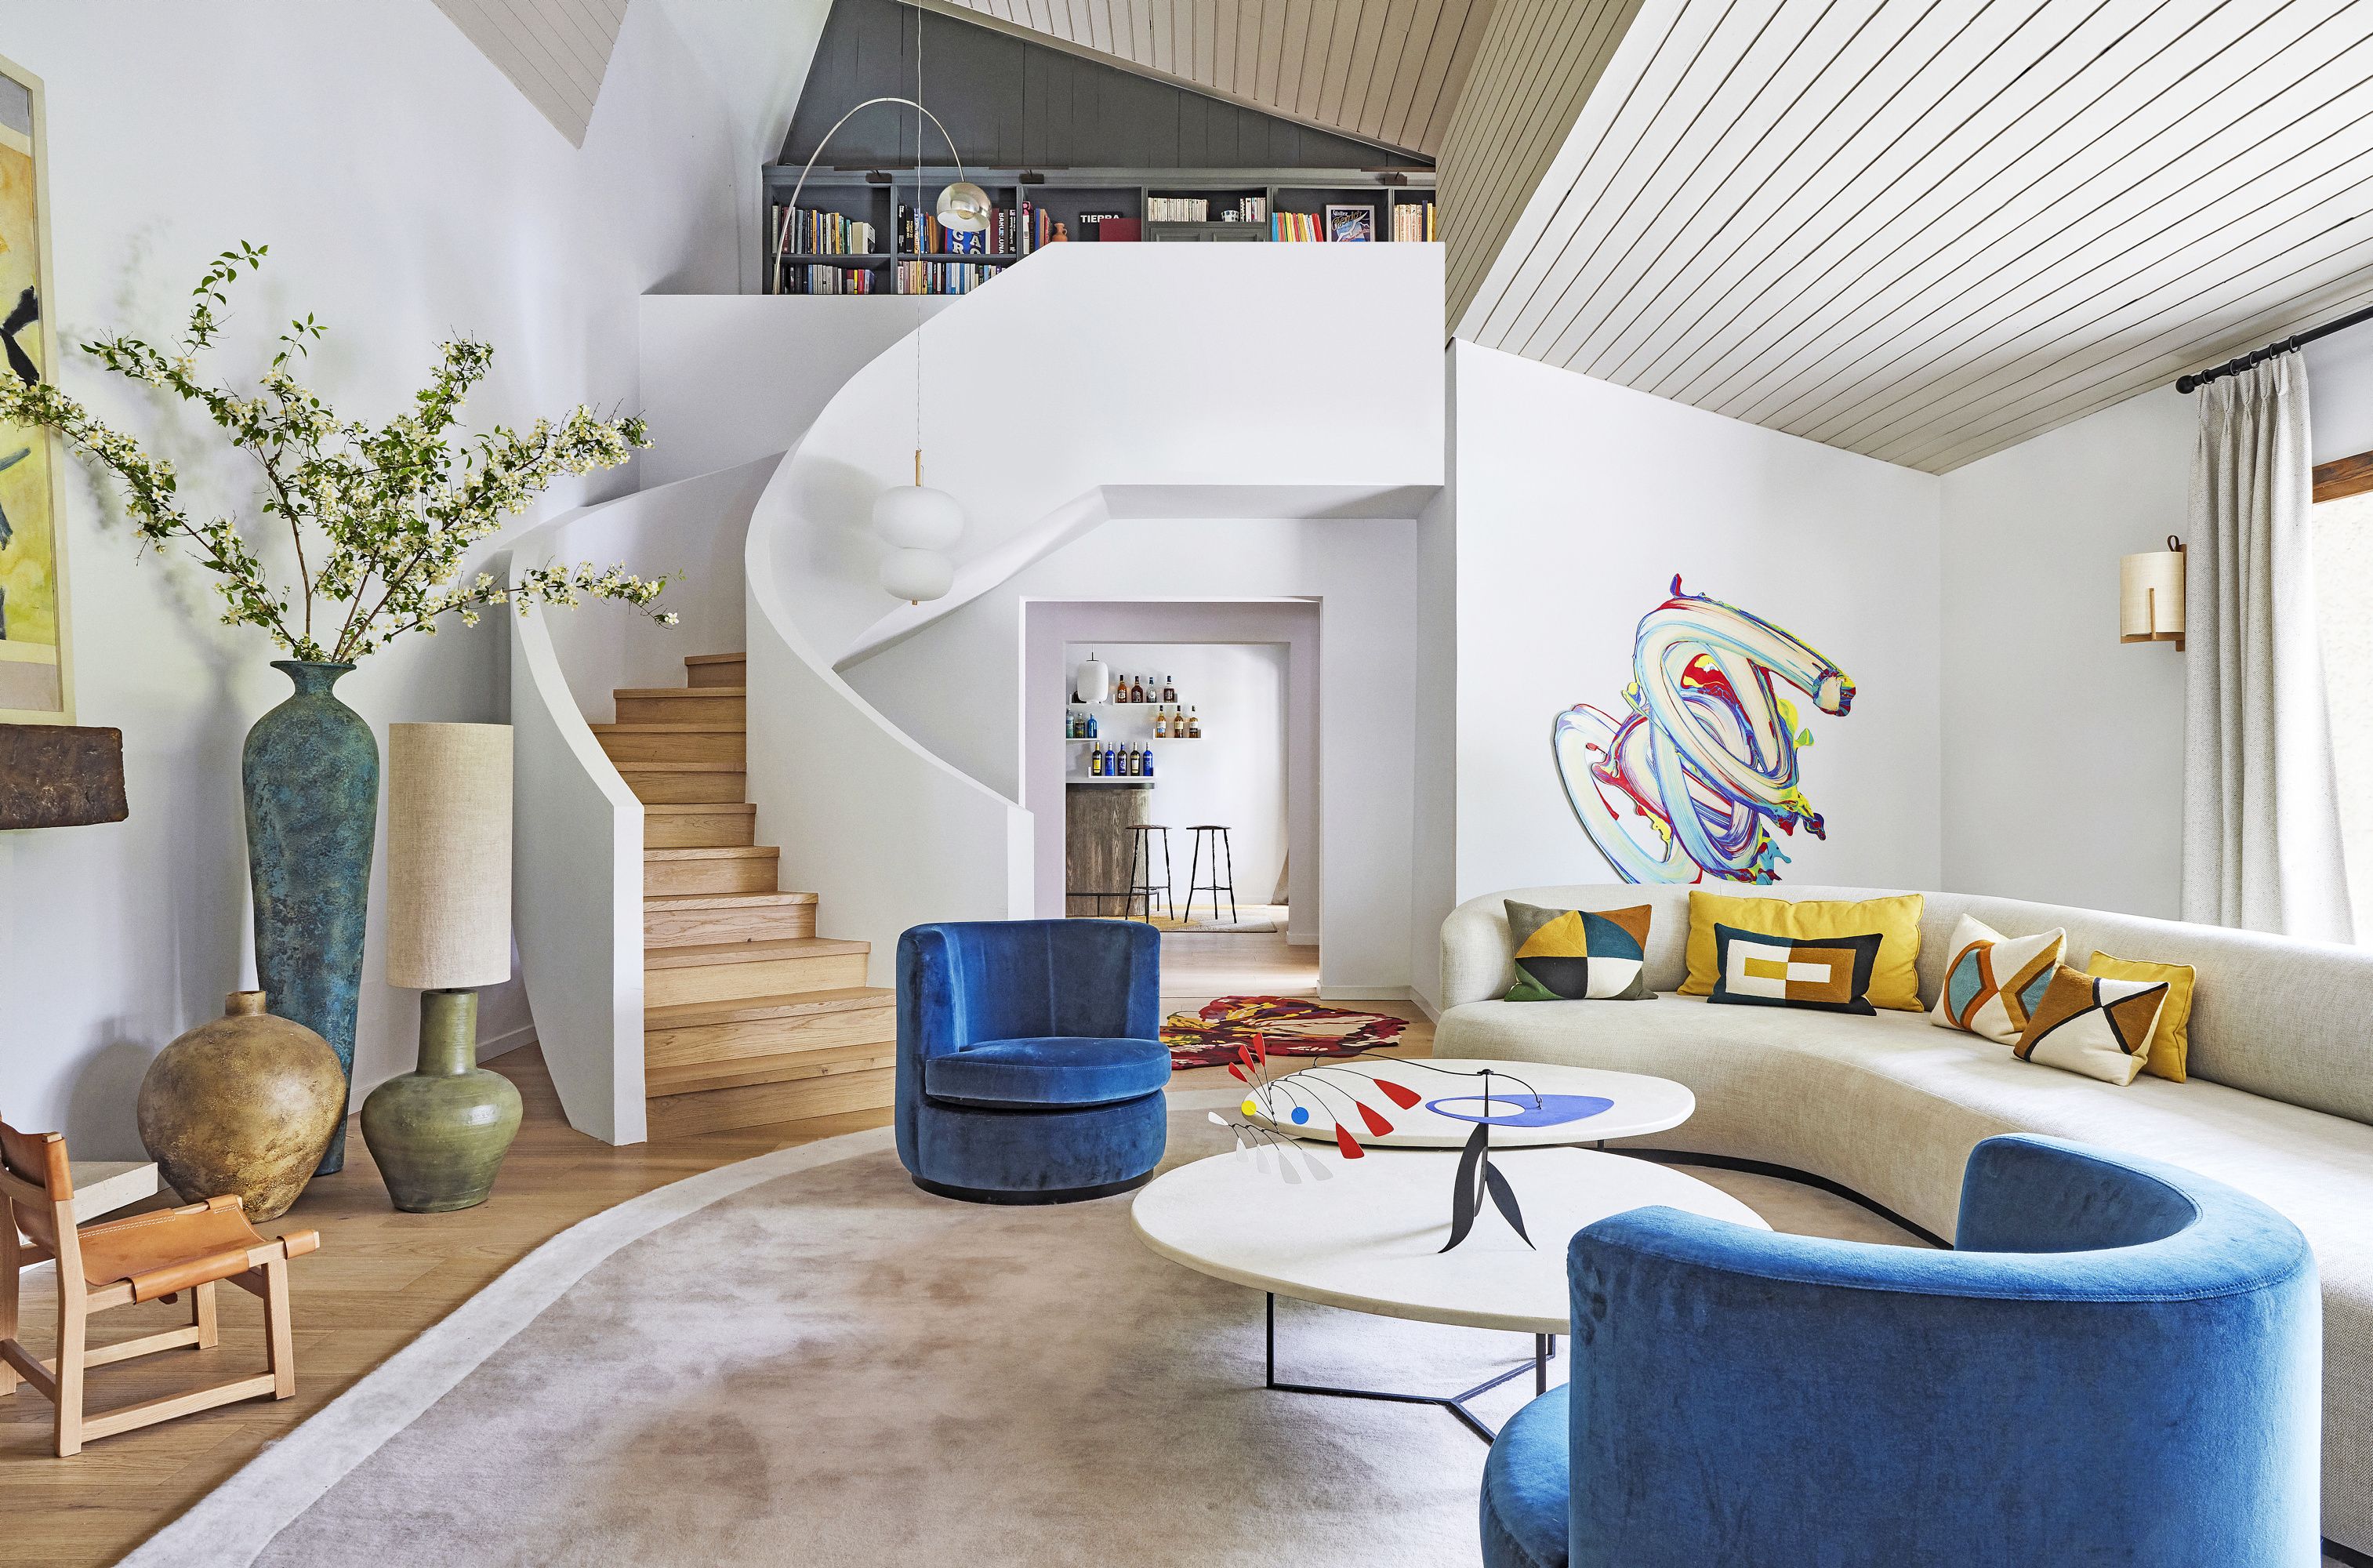 Dale una nueva vida a tus muebles - Decoradores e Interioristas en Madrid